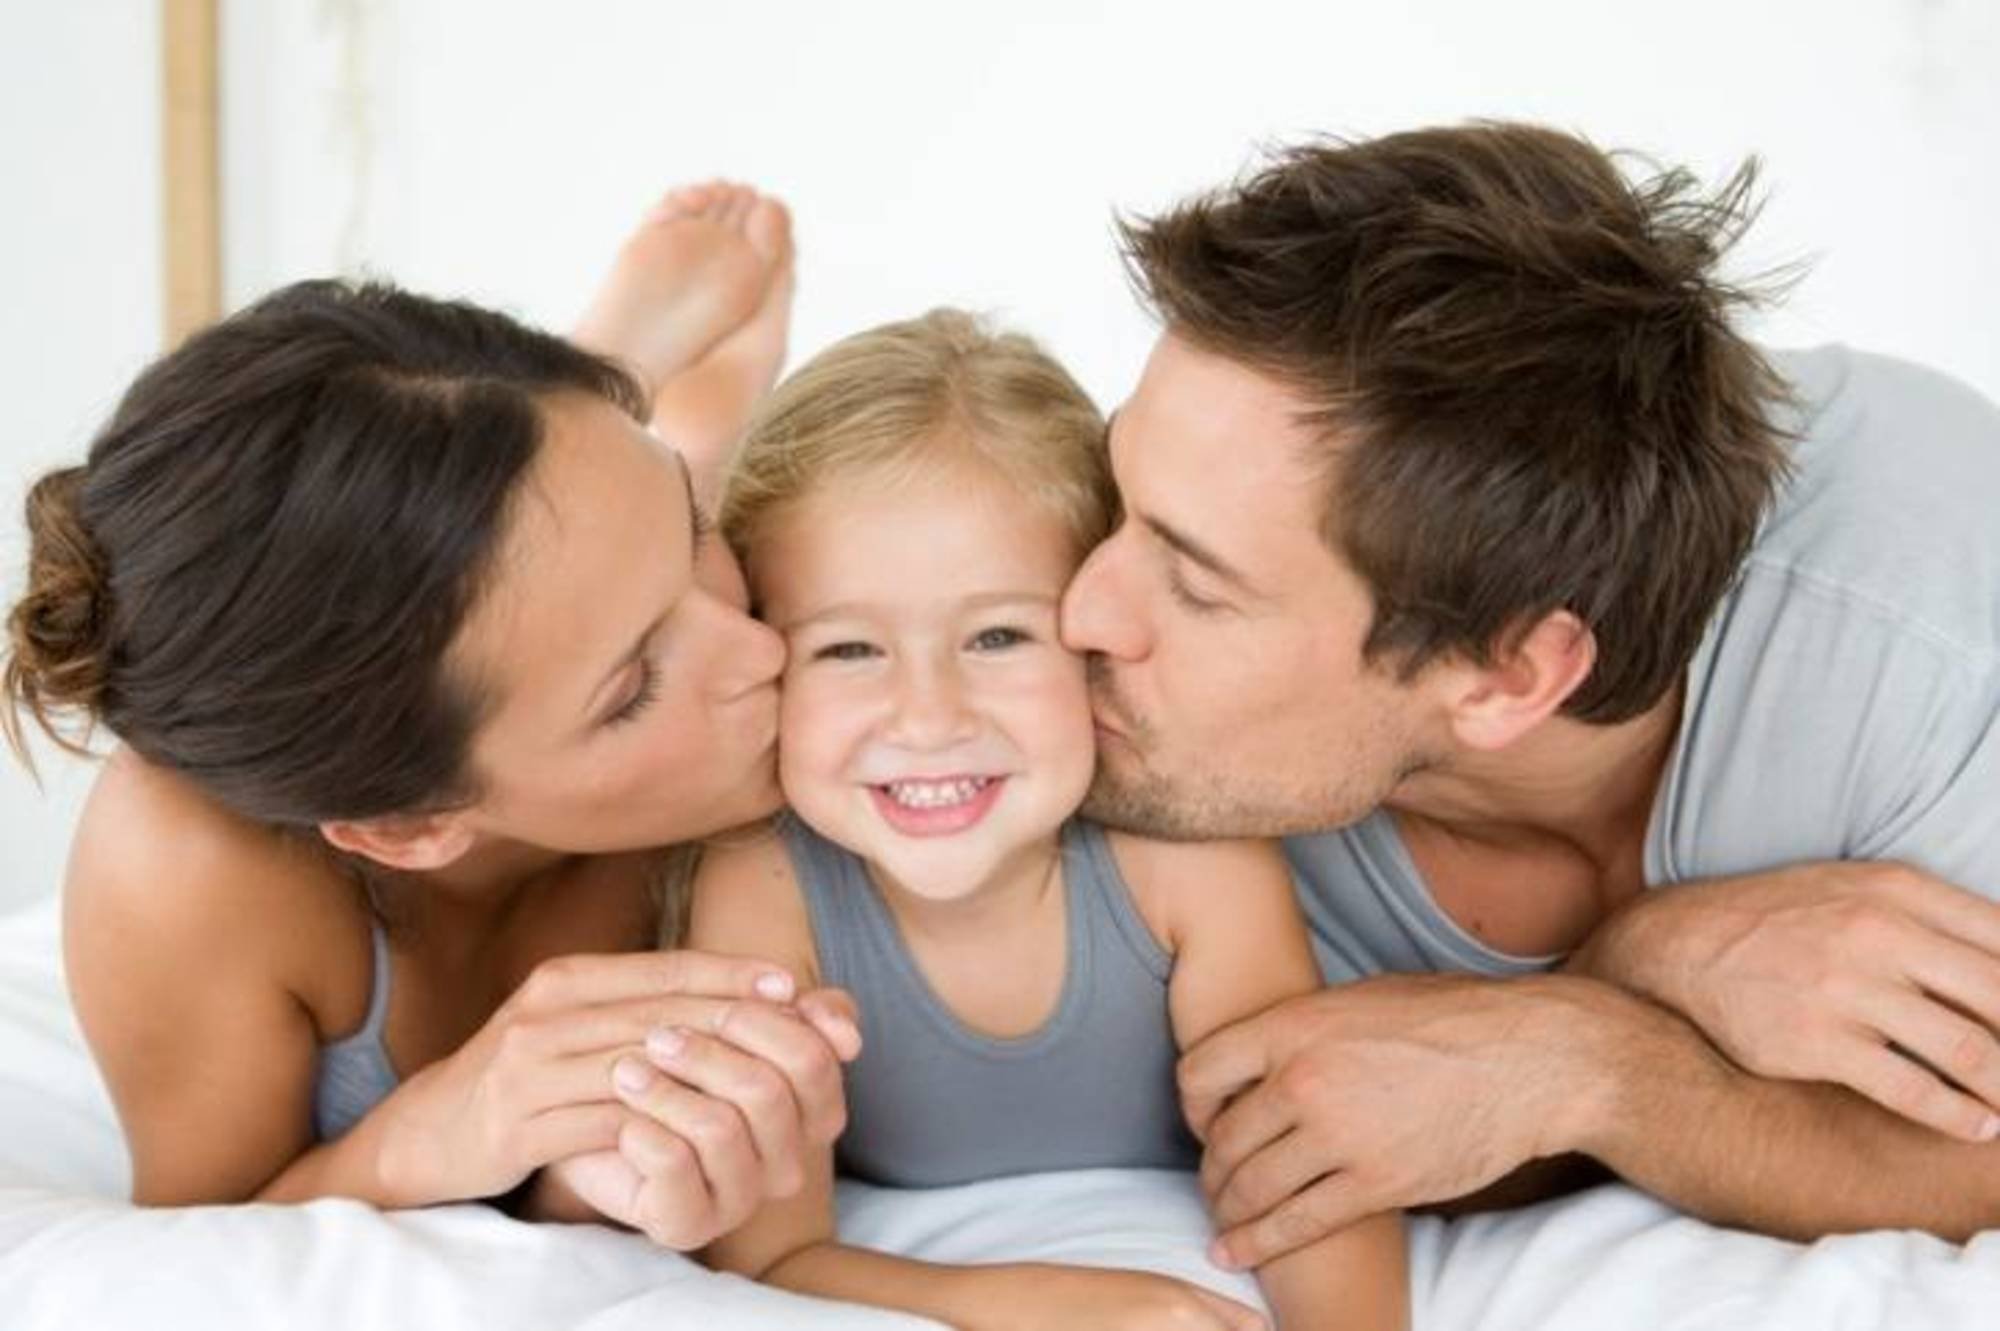 Parent com. Родители и дети. Воспитание ребенка. Любовь между родителями и детьми. Любовь и взаимопонимание в семье.